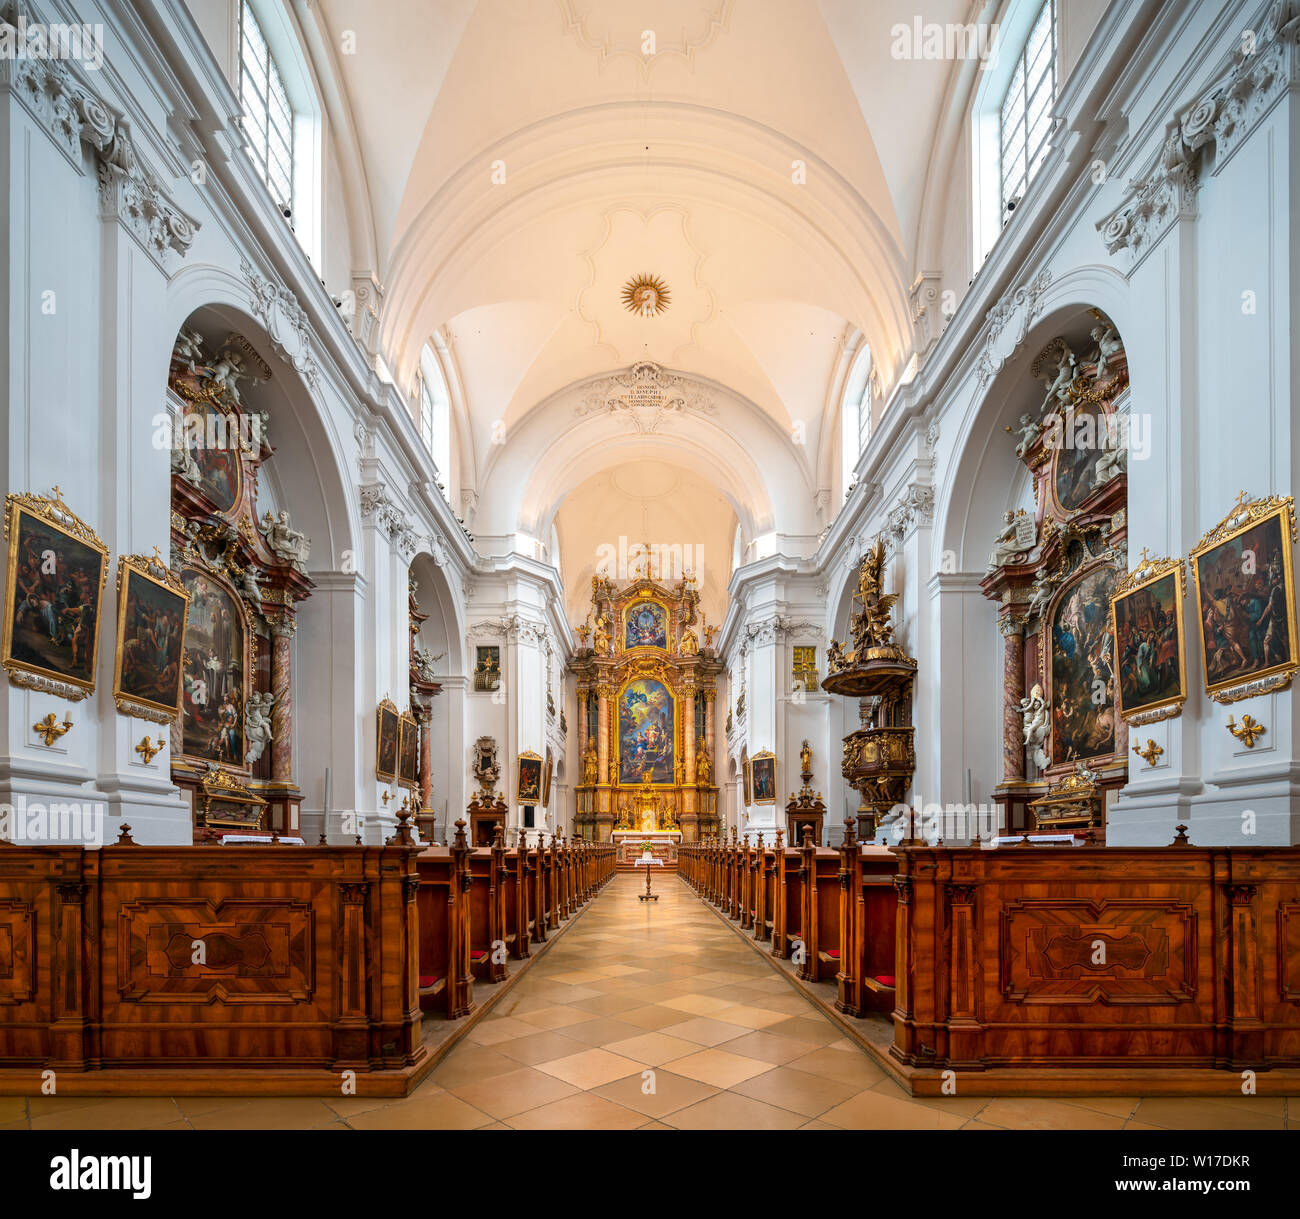 Die Karmeliterkirche - karmelitenkirche - in Linz, Österreich. Mit einem Altarbild von Martino Altomonte. Stockfoto